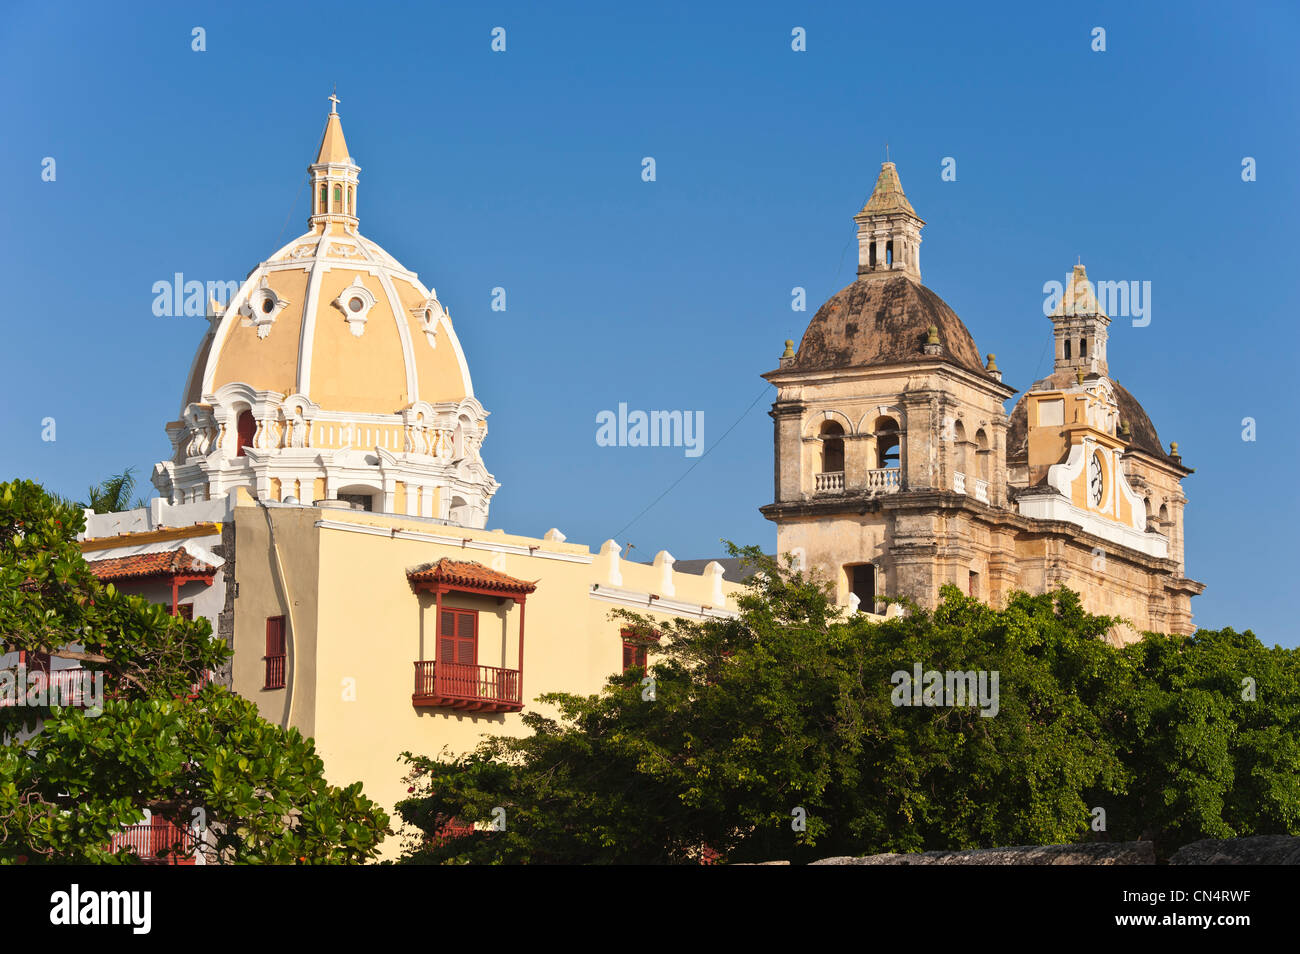 Colombia, departamento de Bolívar, Cartagena, catalogada como Patrimonio de la Humanidad por la UNESCO, el casco histórico de la ciudad vieja, la iglesia de San Foto de stock